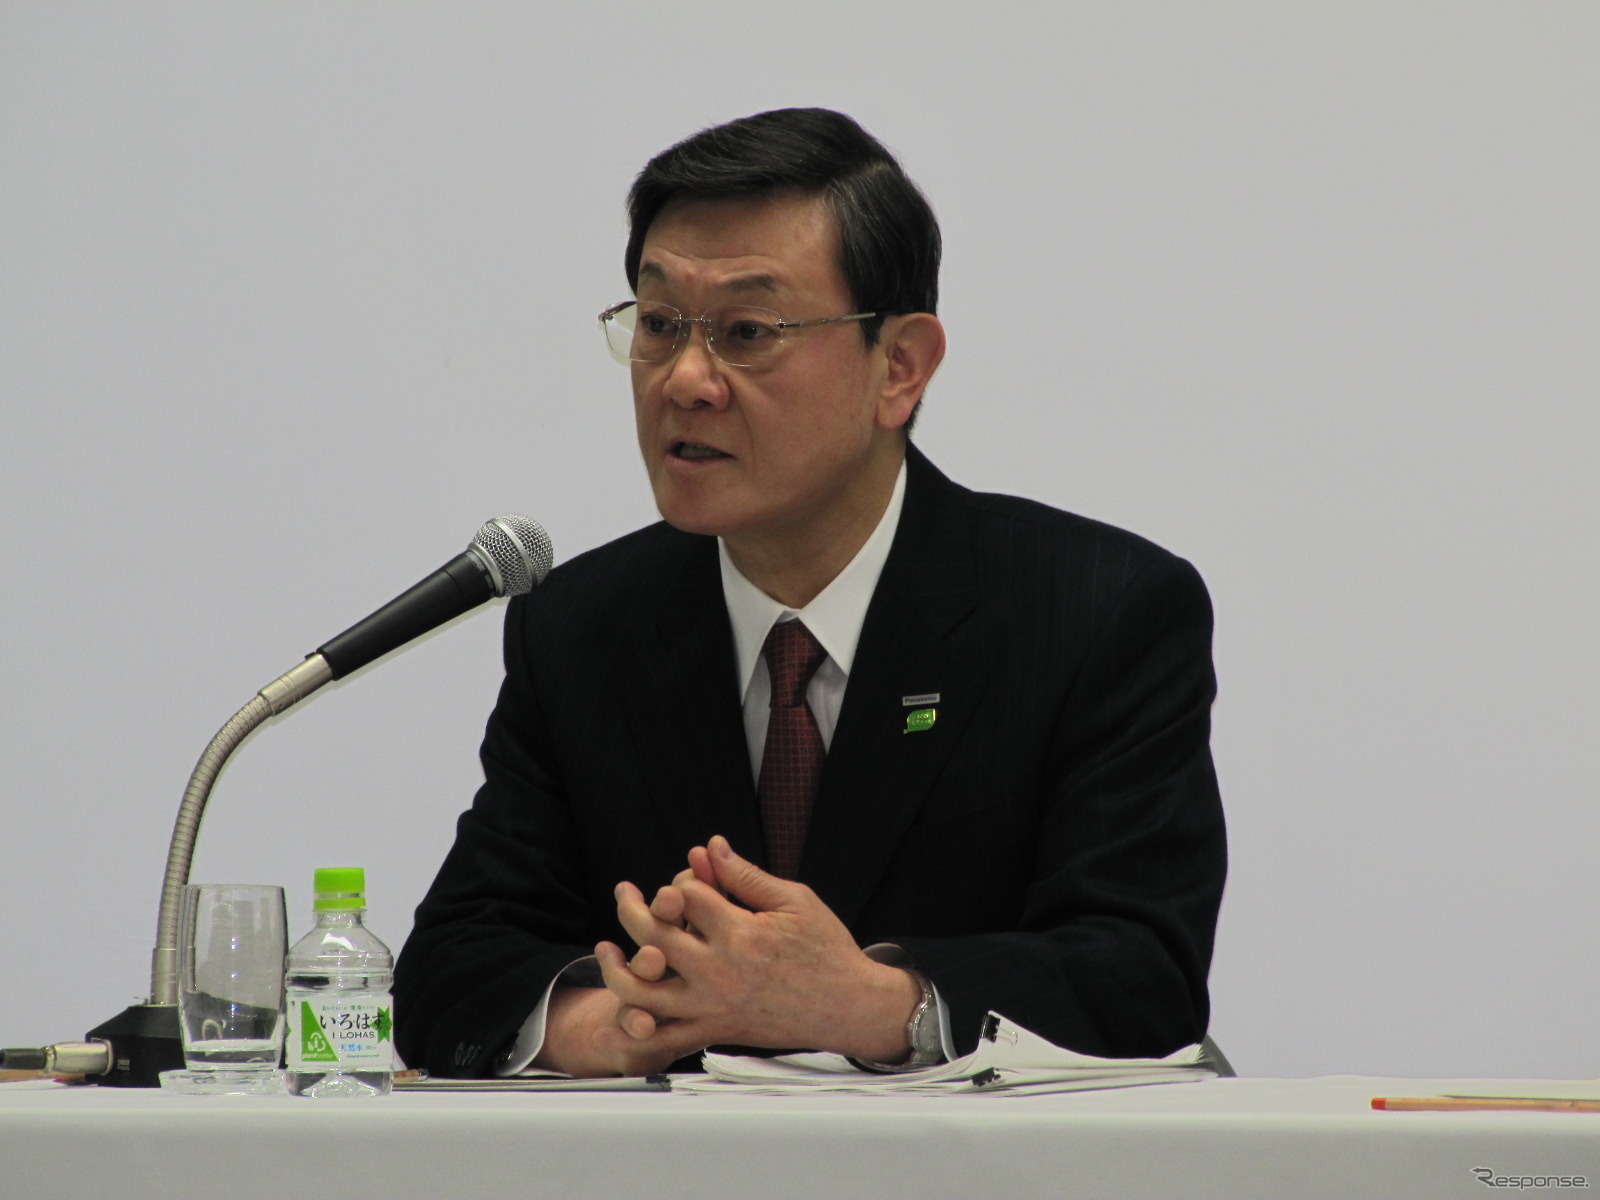 パナソニック2012年3月期第3四半期決算、大坪文雄社長。